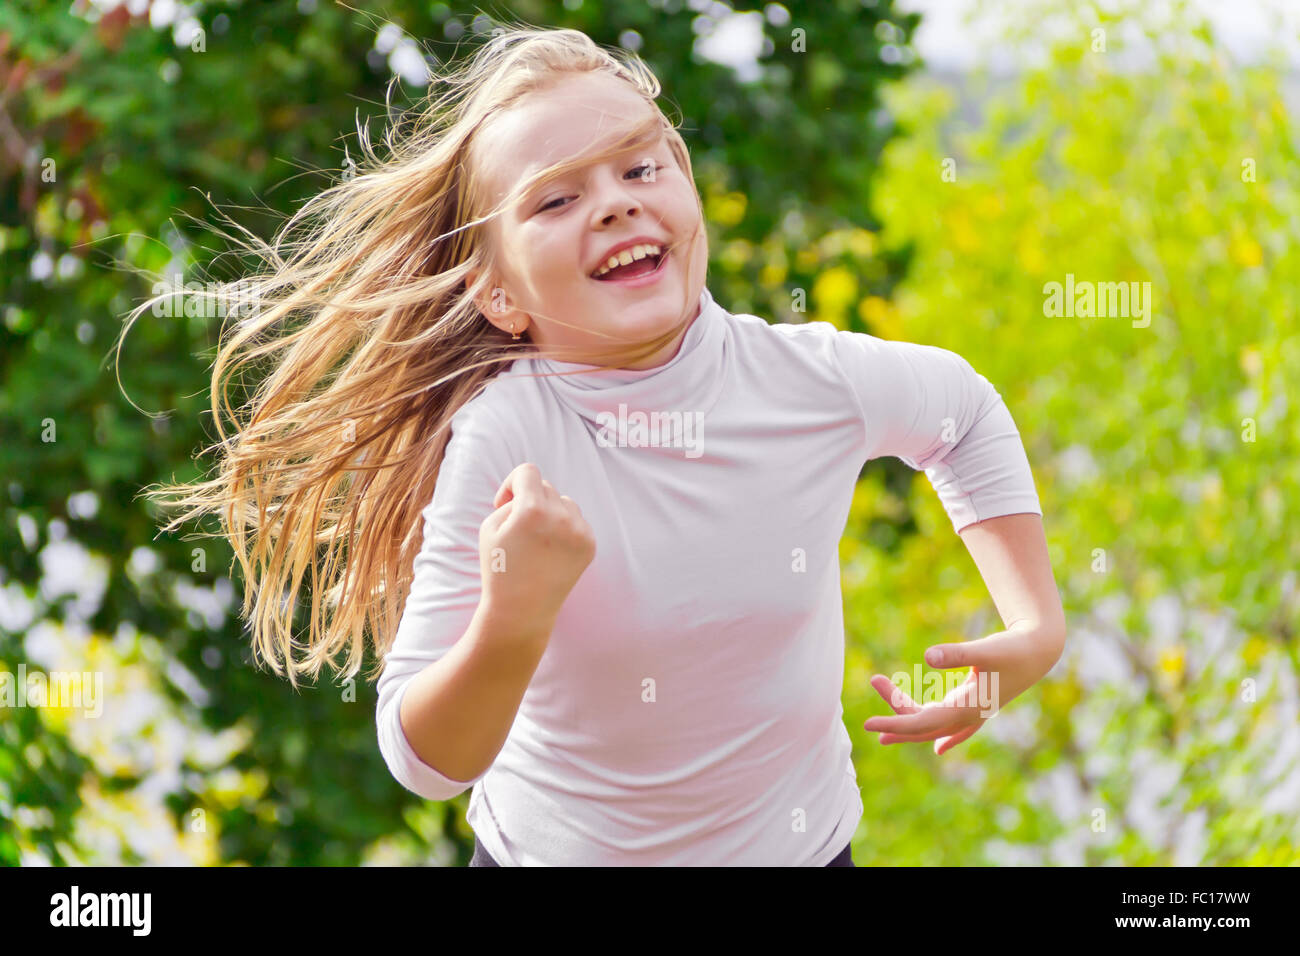 Cute running girl Stock Photo